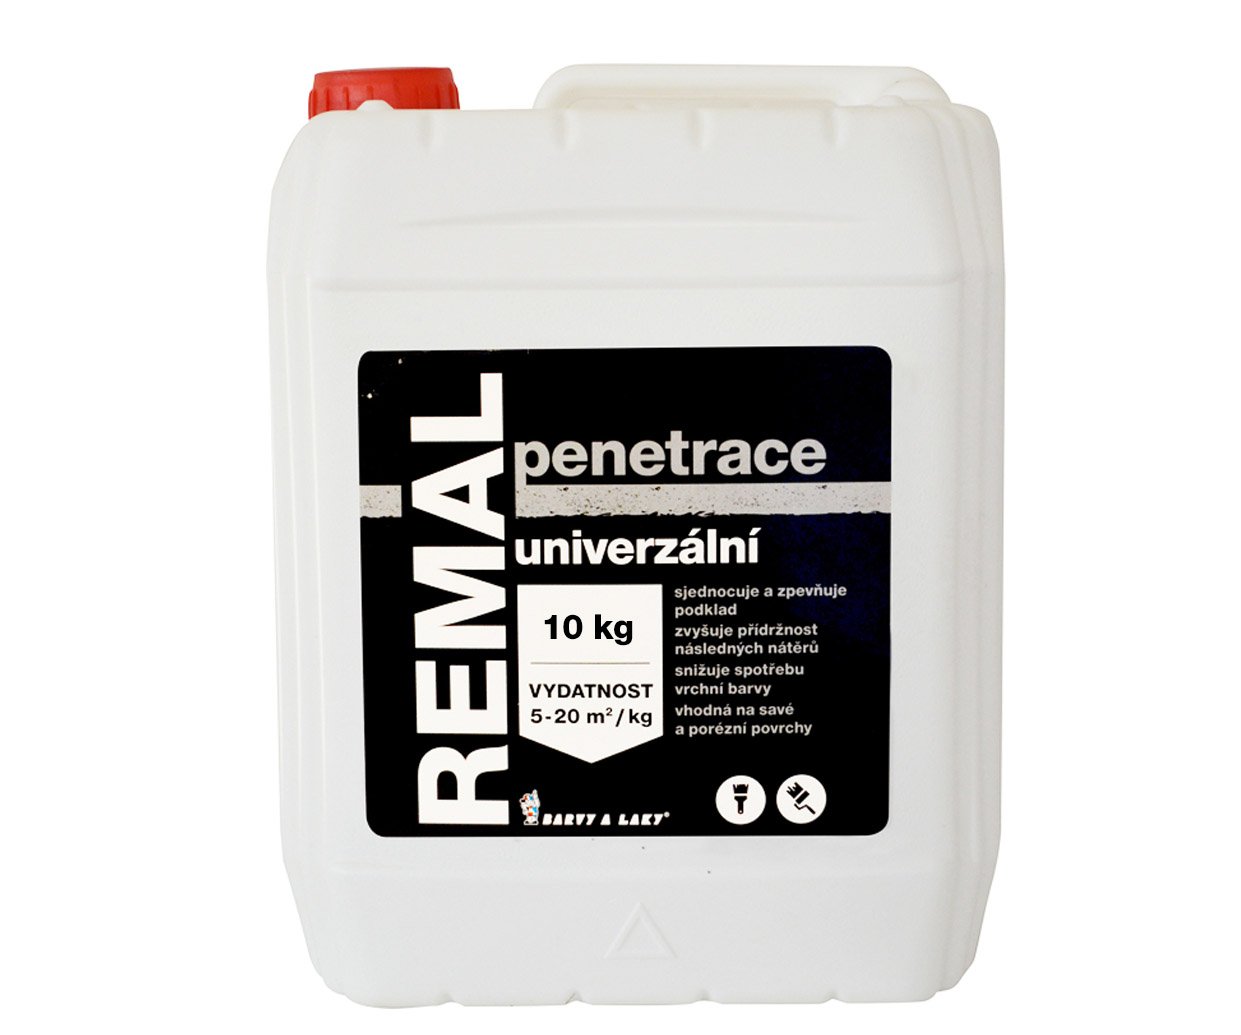 Penetrace univerzální Remal - 10kg